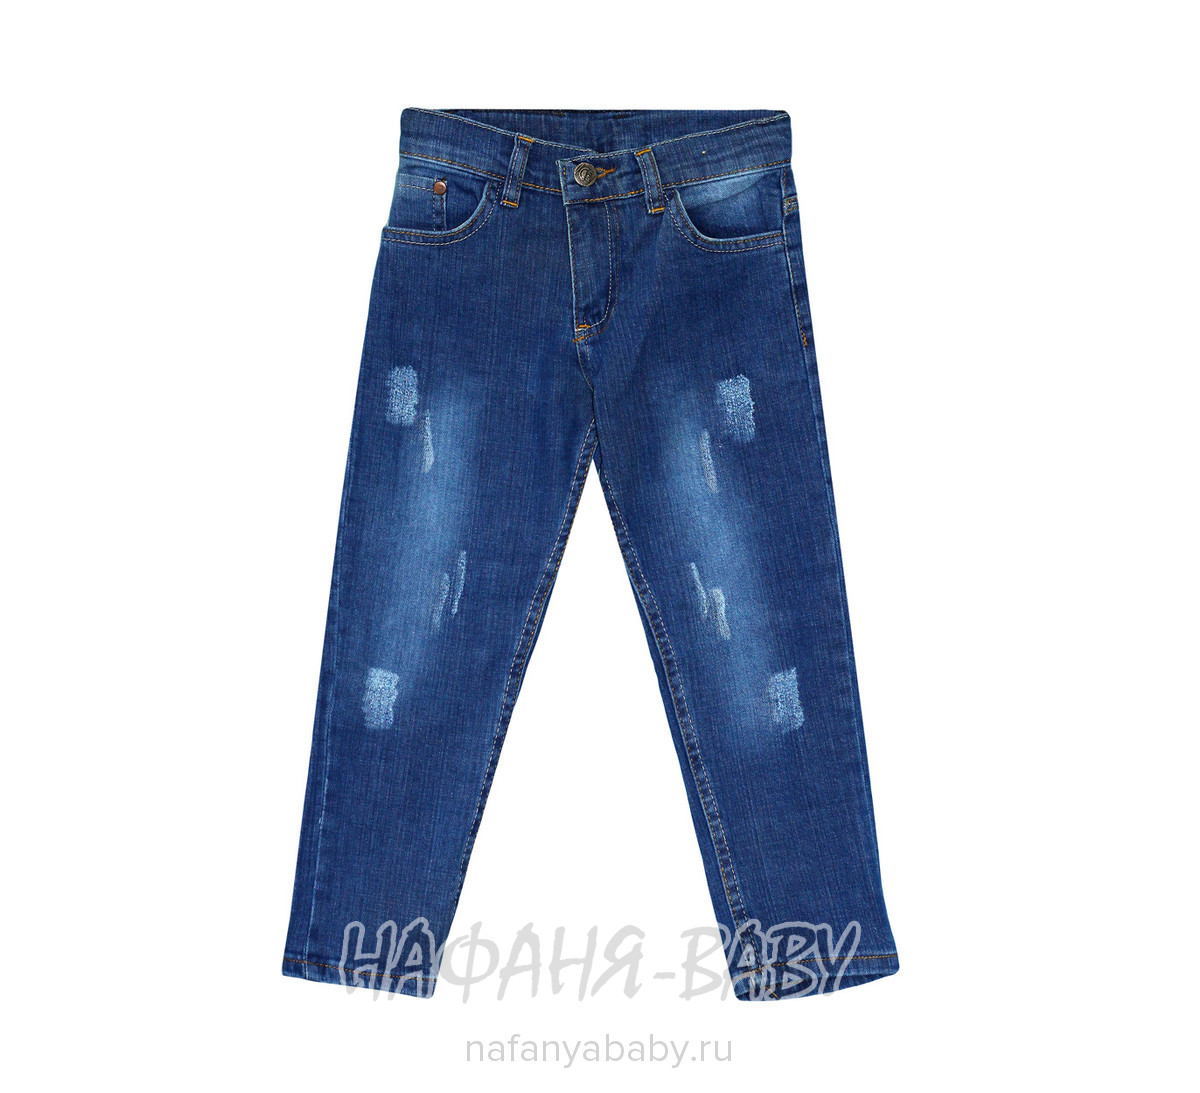 Детские джинсы ARS JEANS, купить в интернет магазине Нафаня. арт: 4851.